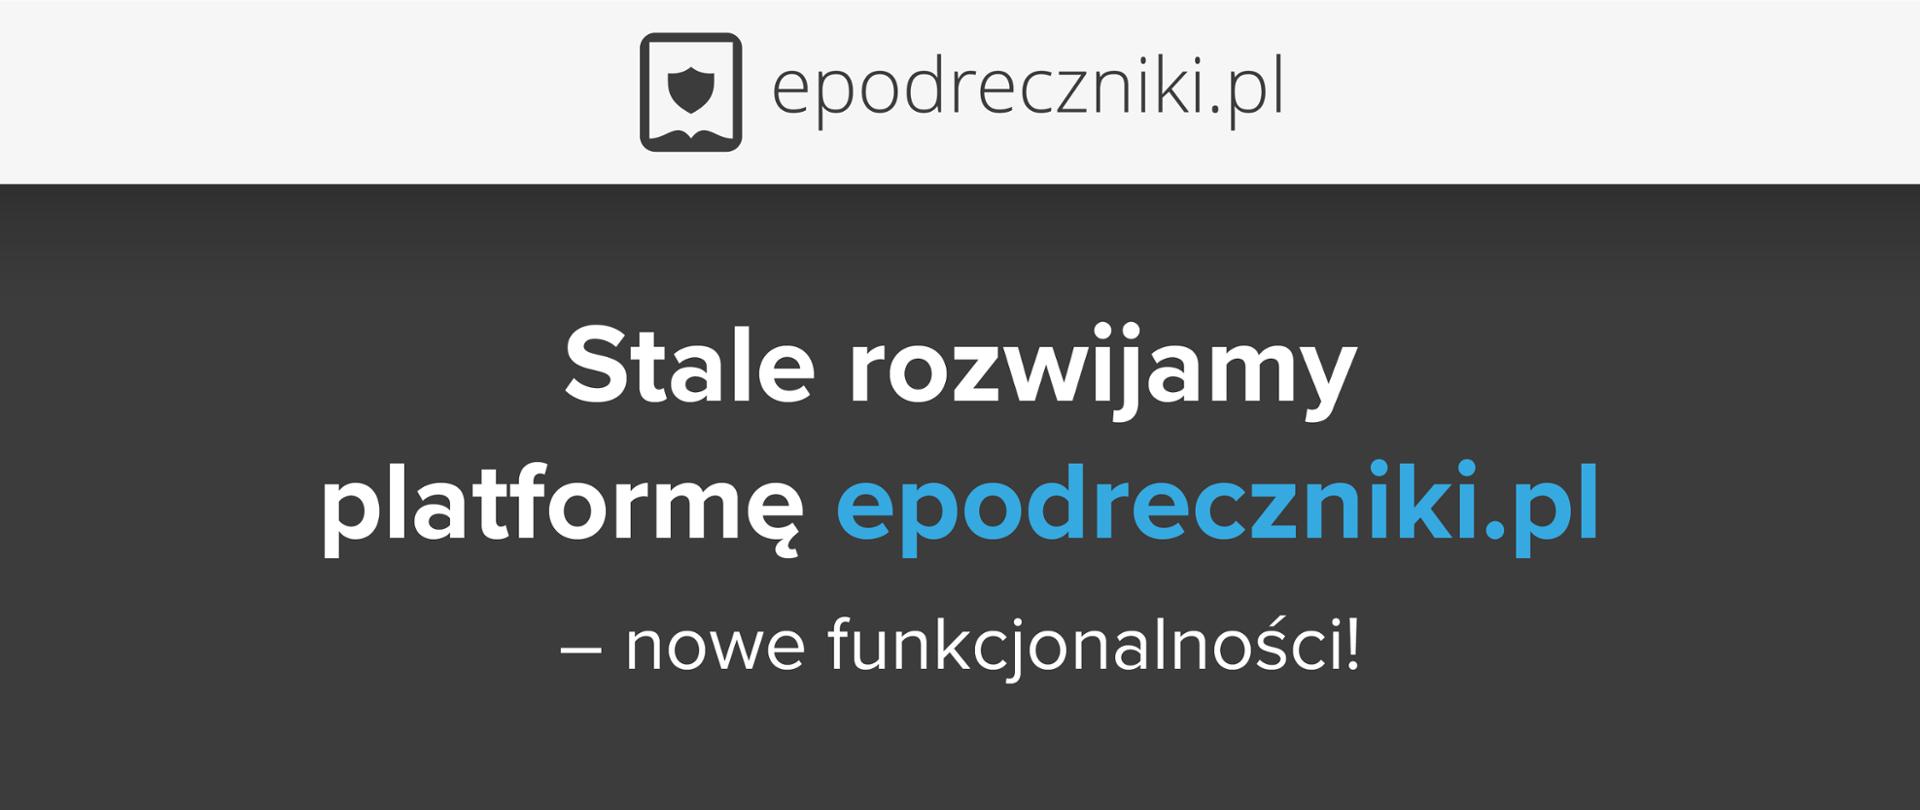 Grafitowe tło z jasnoszarym paskiem u góry, na którym znajduje się logo epodreczniki.pl.
Na środku ciemnego tła jest napis: "Stale rozwijamy platformę epodreczniki.pl – nowe funkcjonalność!"